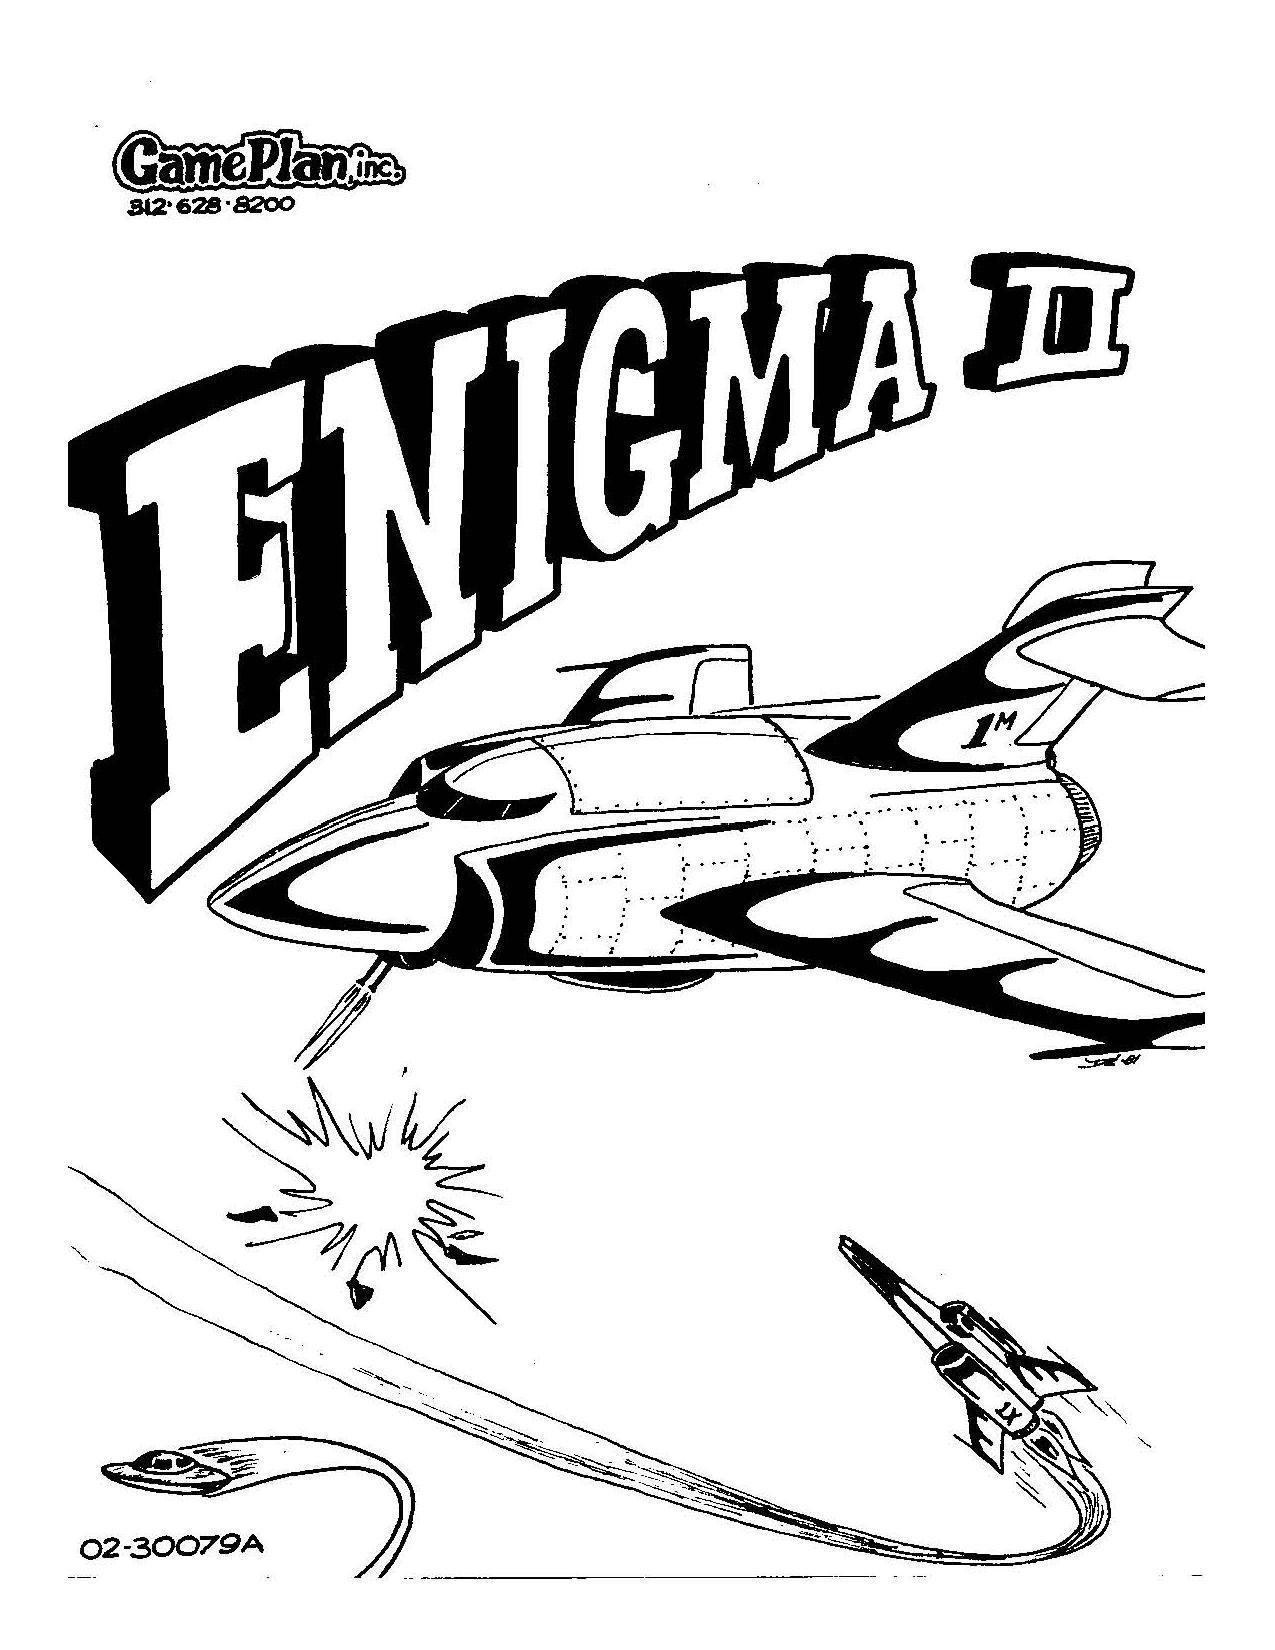 Enigma II (U)